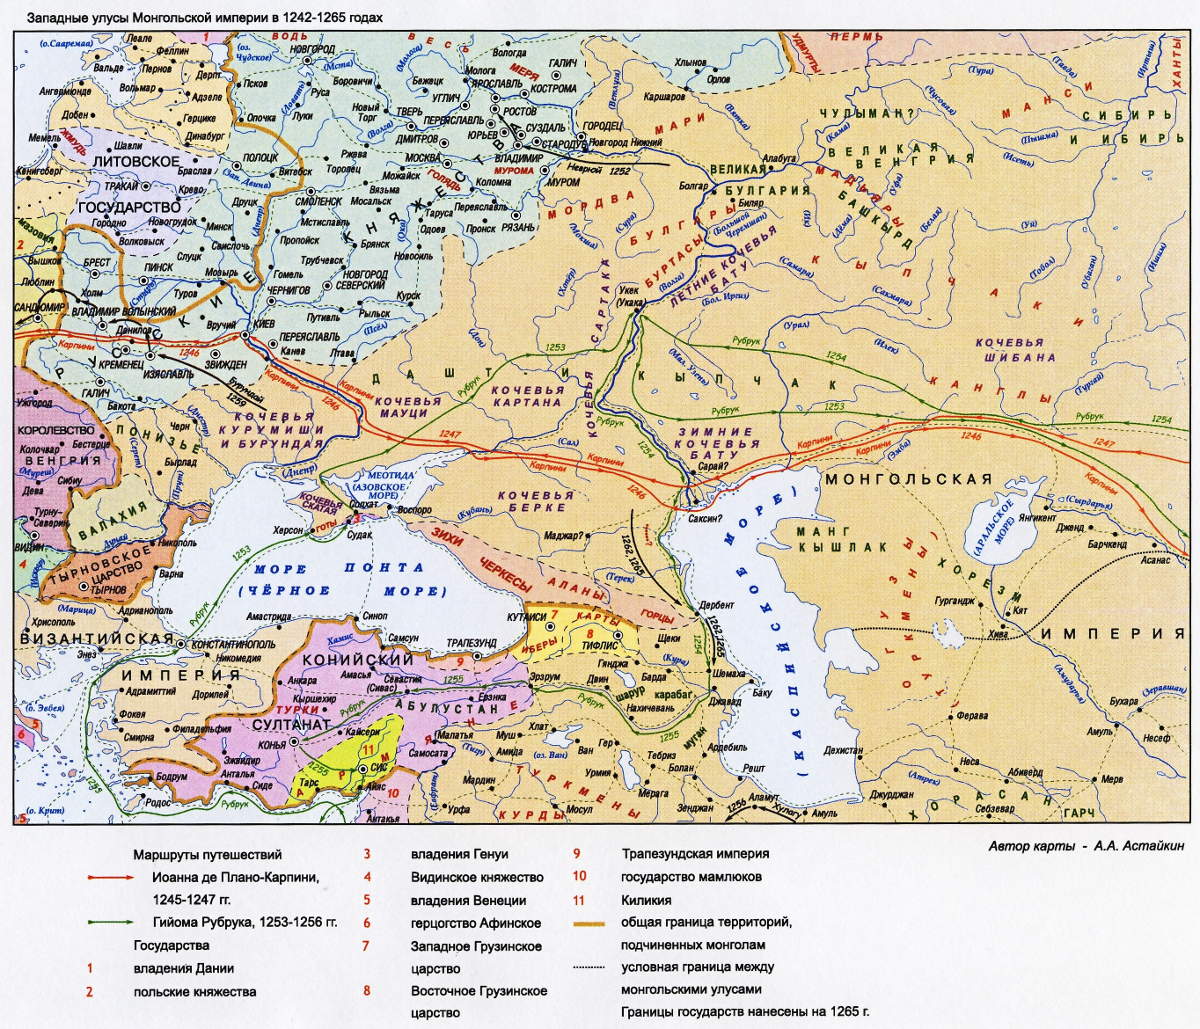 Время монгольской империи 1245-65 года